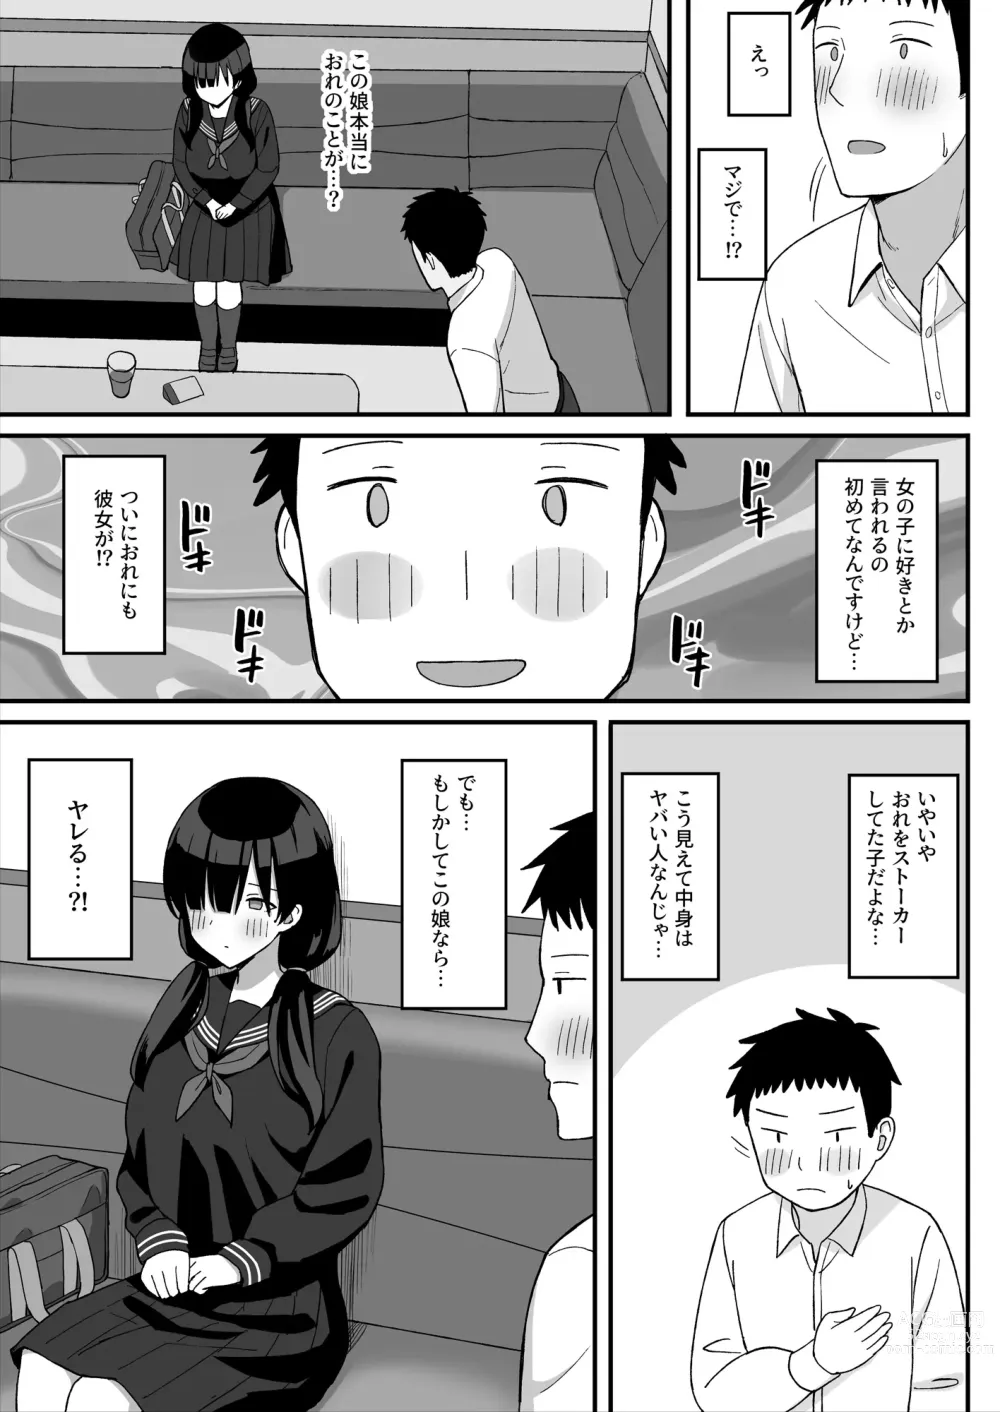 Page 11 of doujinshi 地味巨乳のストーカー女に告白されたのでヤりまくってみた話